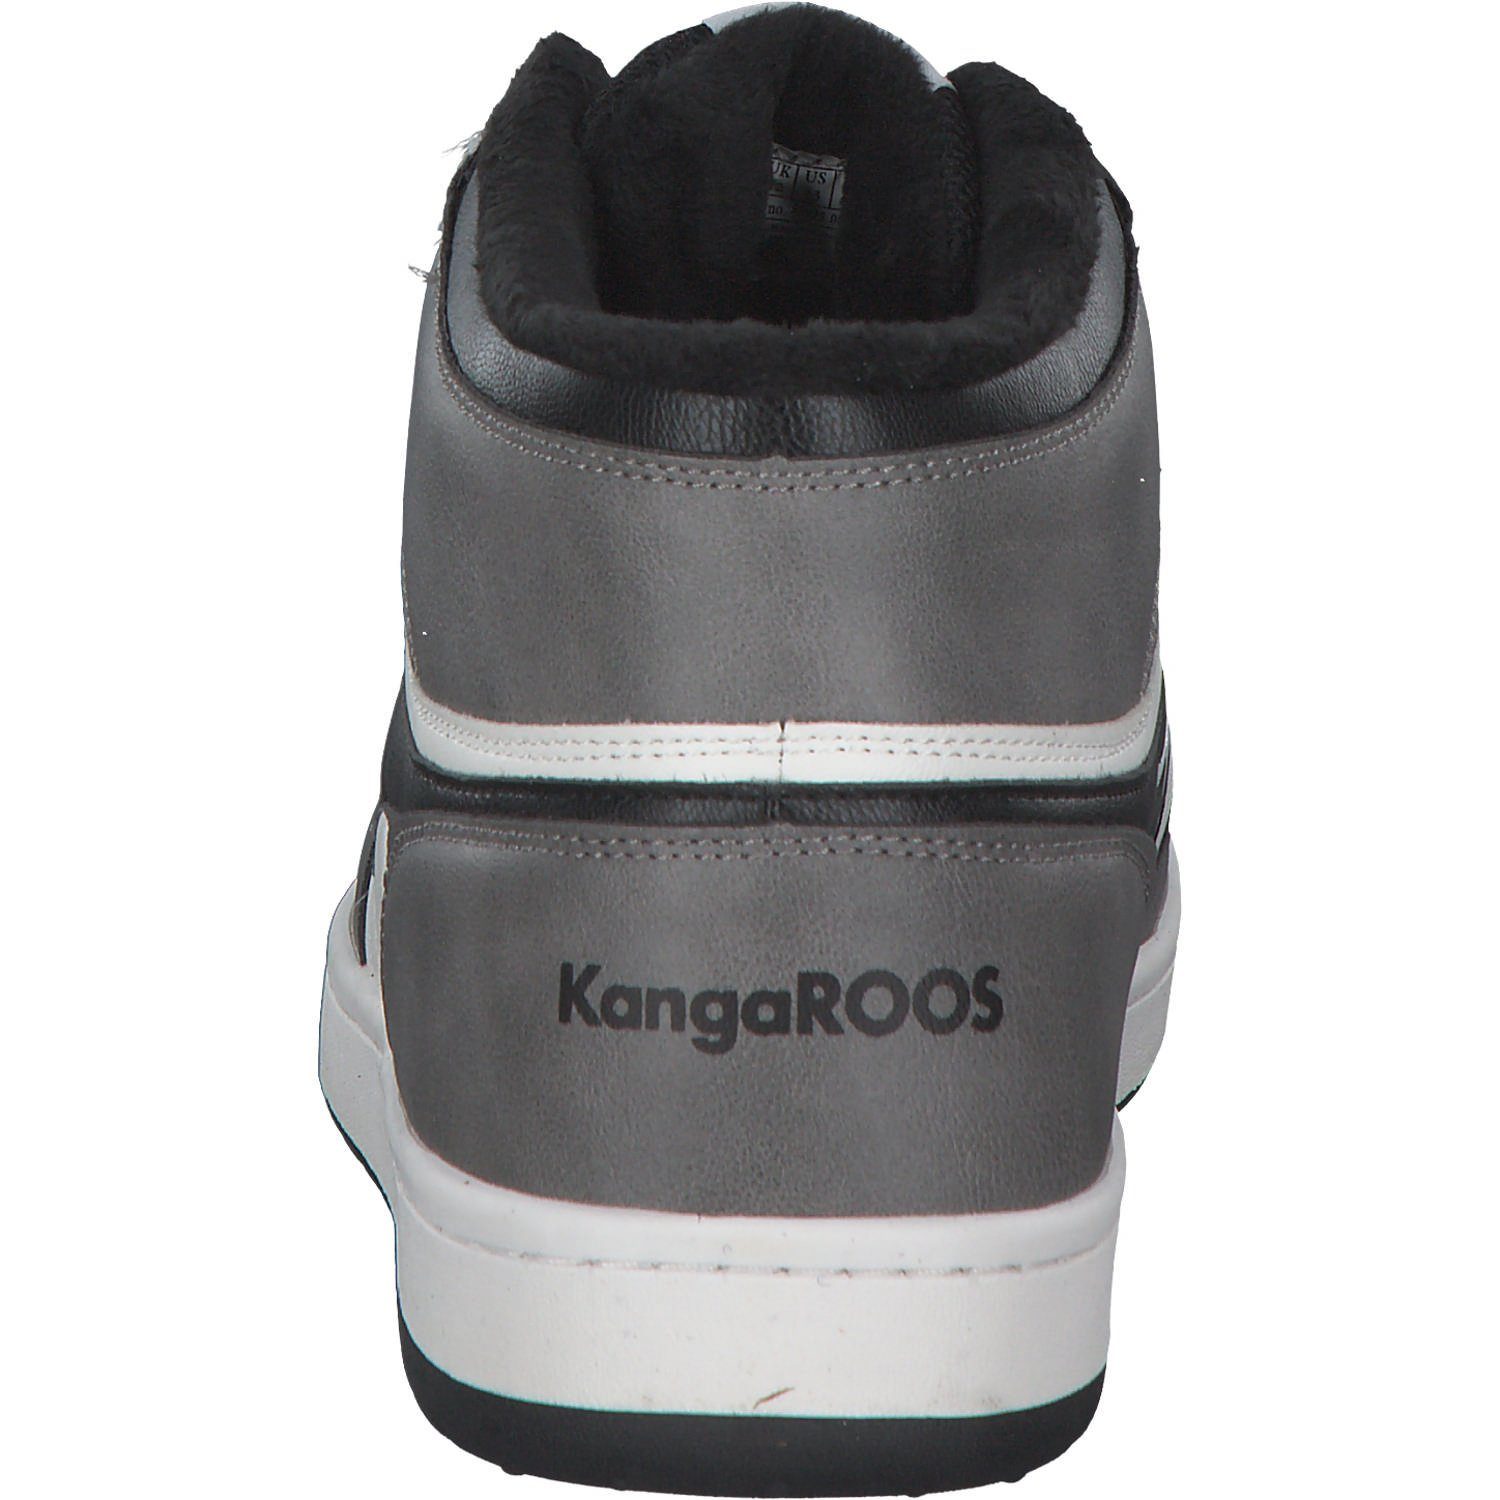 KangaROOS KangaROOS K-Slam Two Hi 80028 (12801506) Stiefel grau weiß